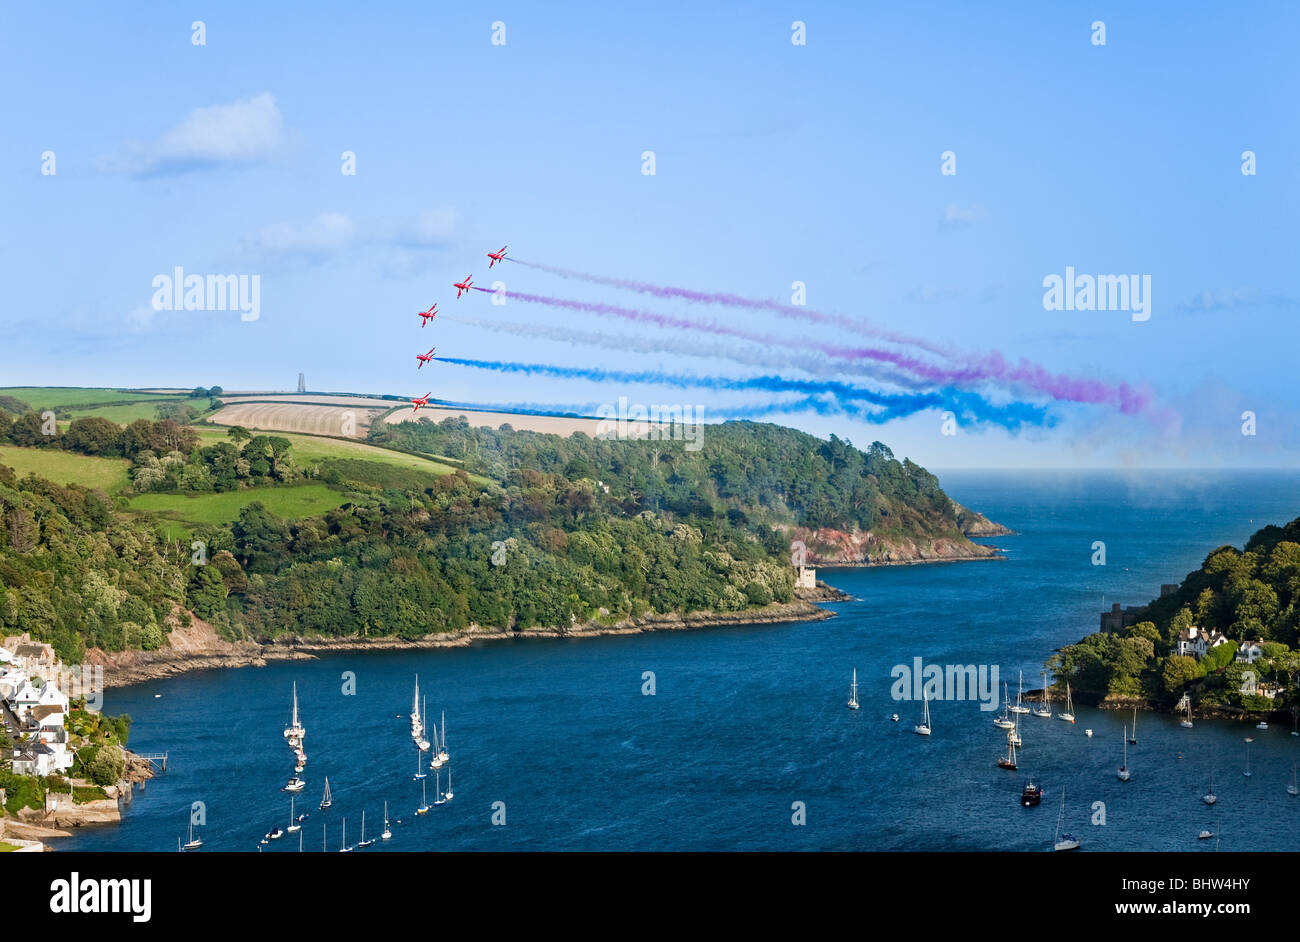 Royal Air Force Red Arrows Kunstflugvorführung bei der Dartmouth Regatta, Kingswear, Devon, England, Großbritannien Stockfoto